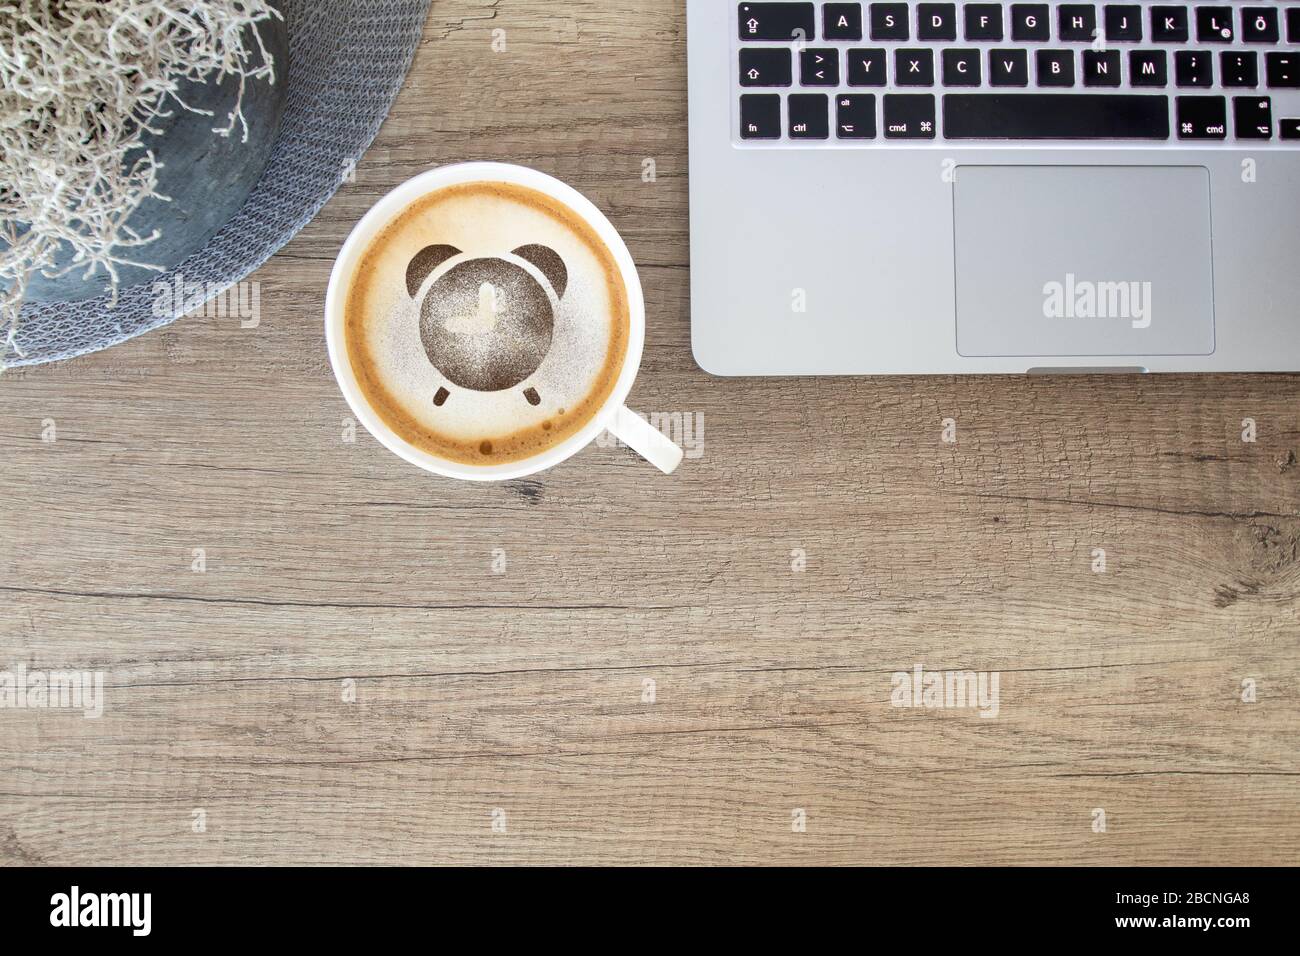 Tasse à café avec icône d'alarme sur une table rustique avec ordinateur portable / bureau à la maison Banque D'Images